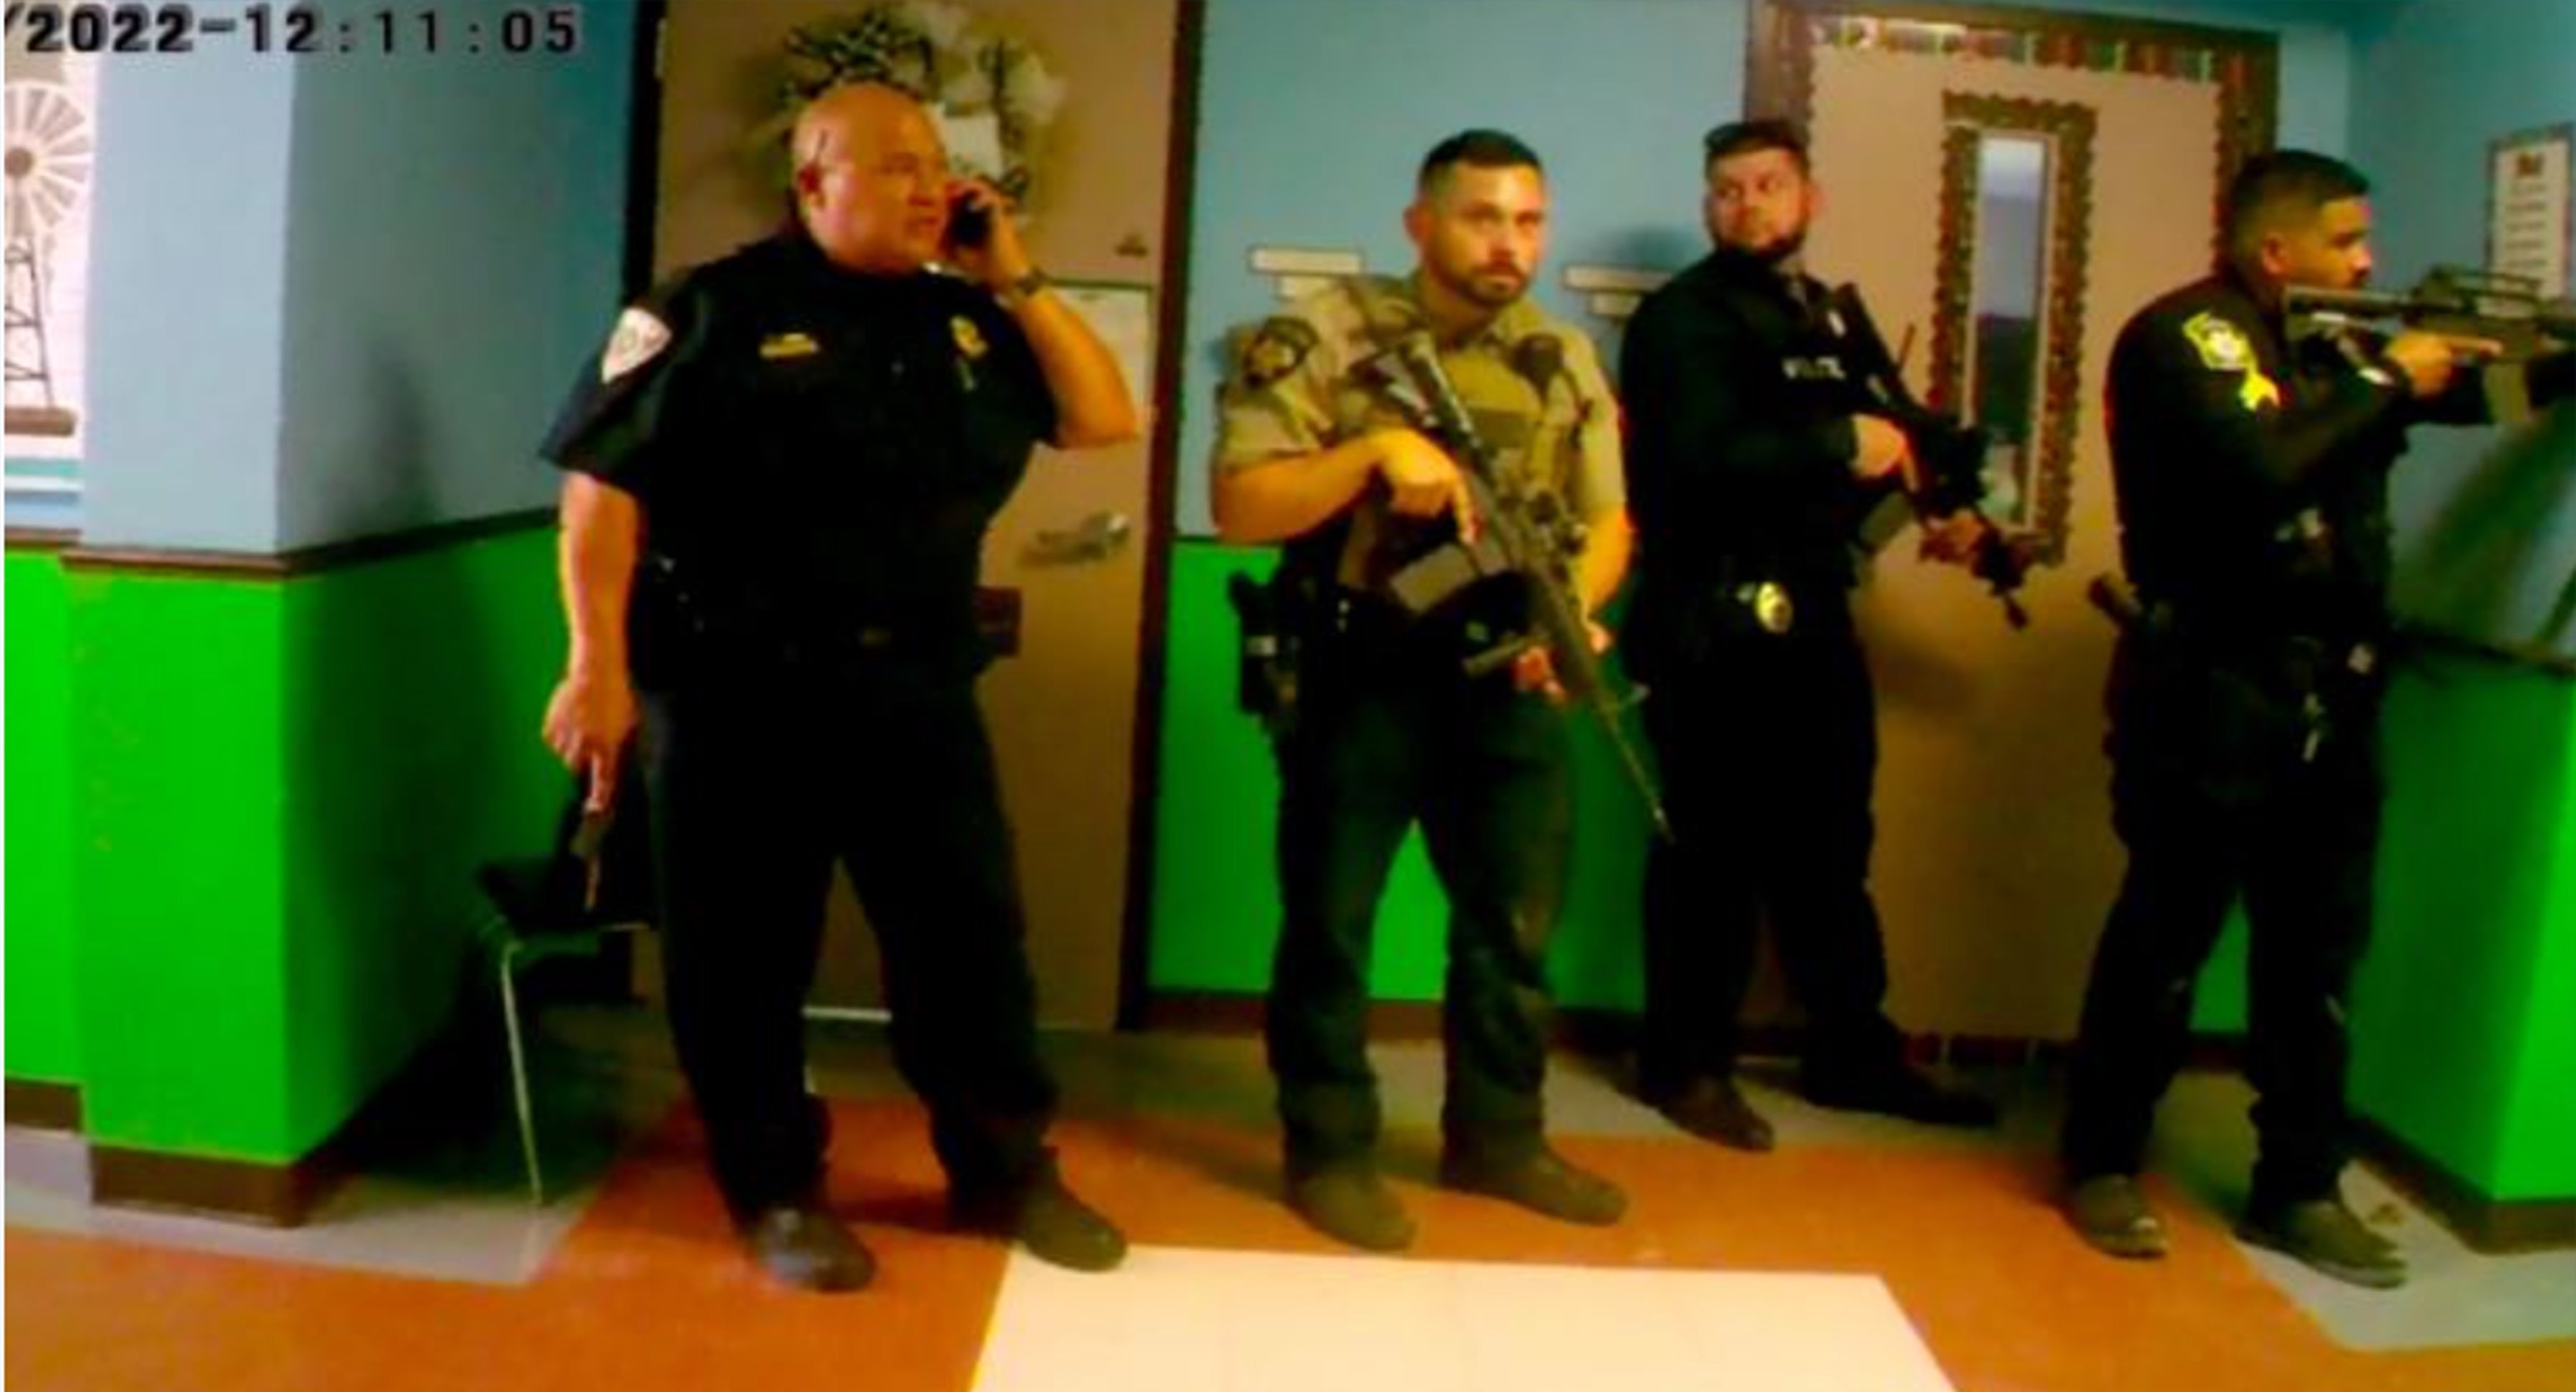 Imágenes de la cámara corporal muestran a oficiales armados y el jefe de la policía escolar, Pete Arredondo, fuera del salón donde se desarrollaba la masacre